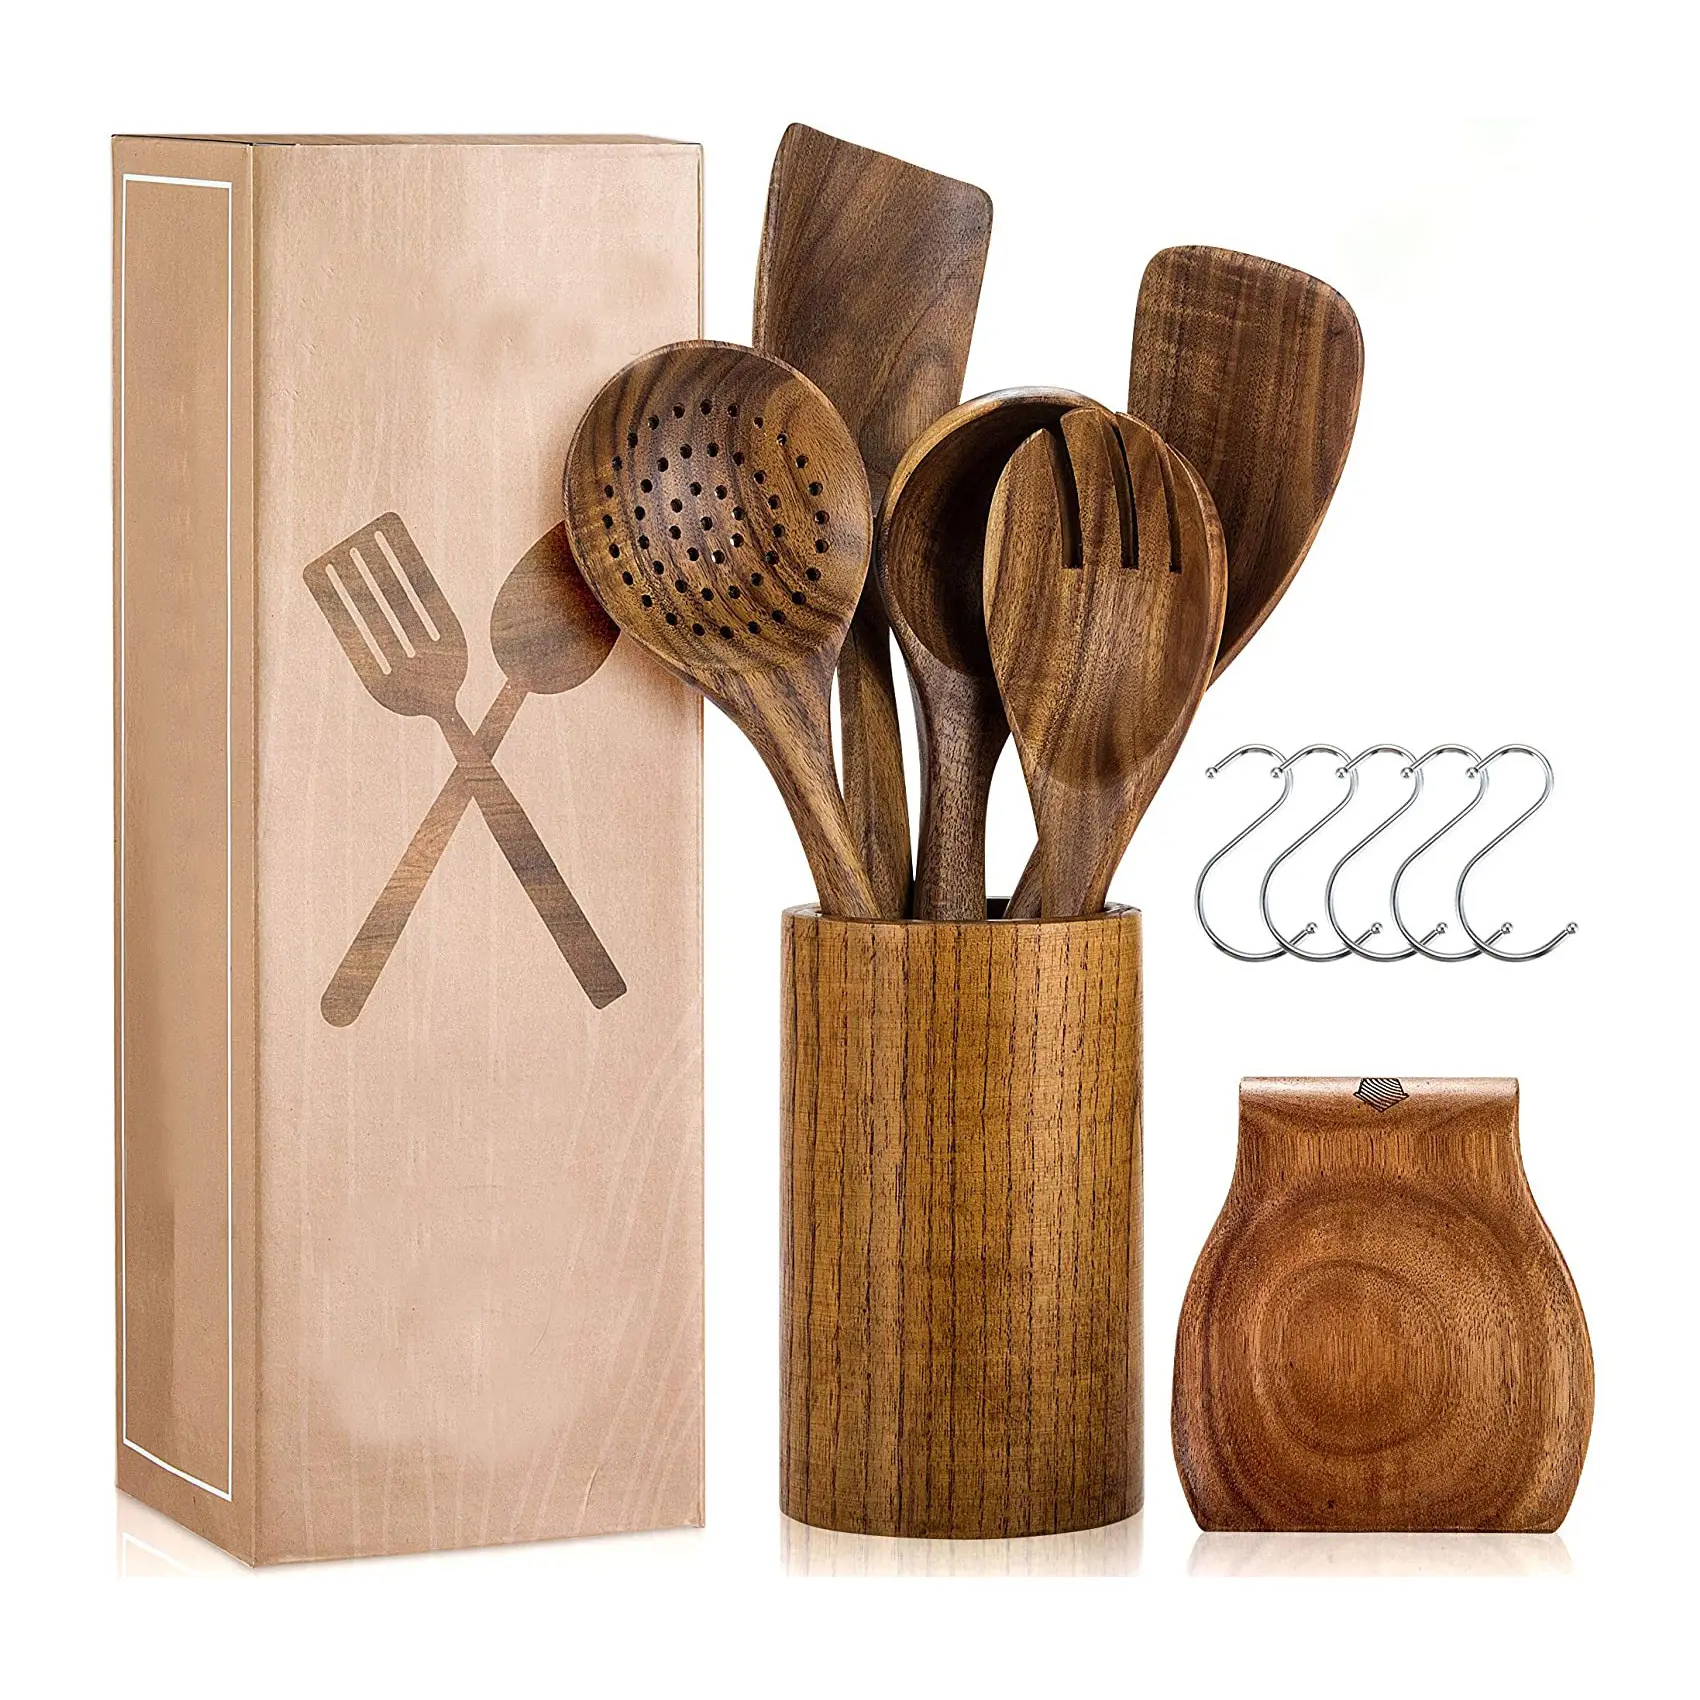 Хит продаж, деревянная кухонная утварь с подставкой, шпатель и подставка для ложек из натурального тика, деревянная кухонная утварь, 12 комплектов